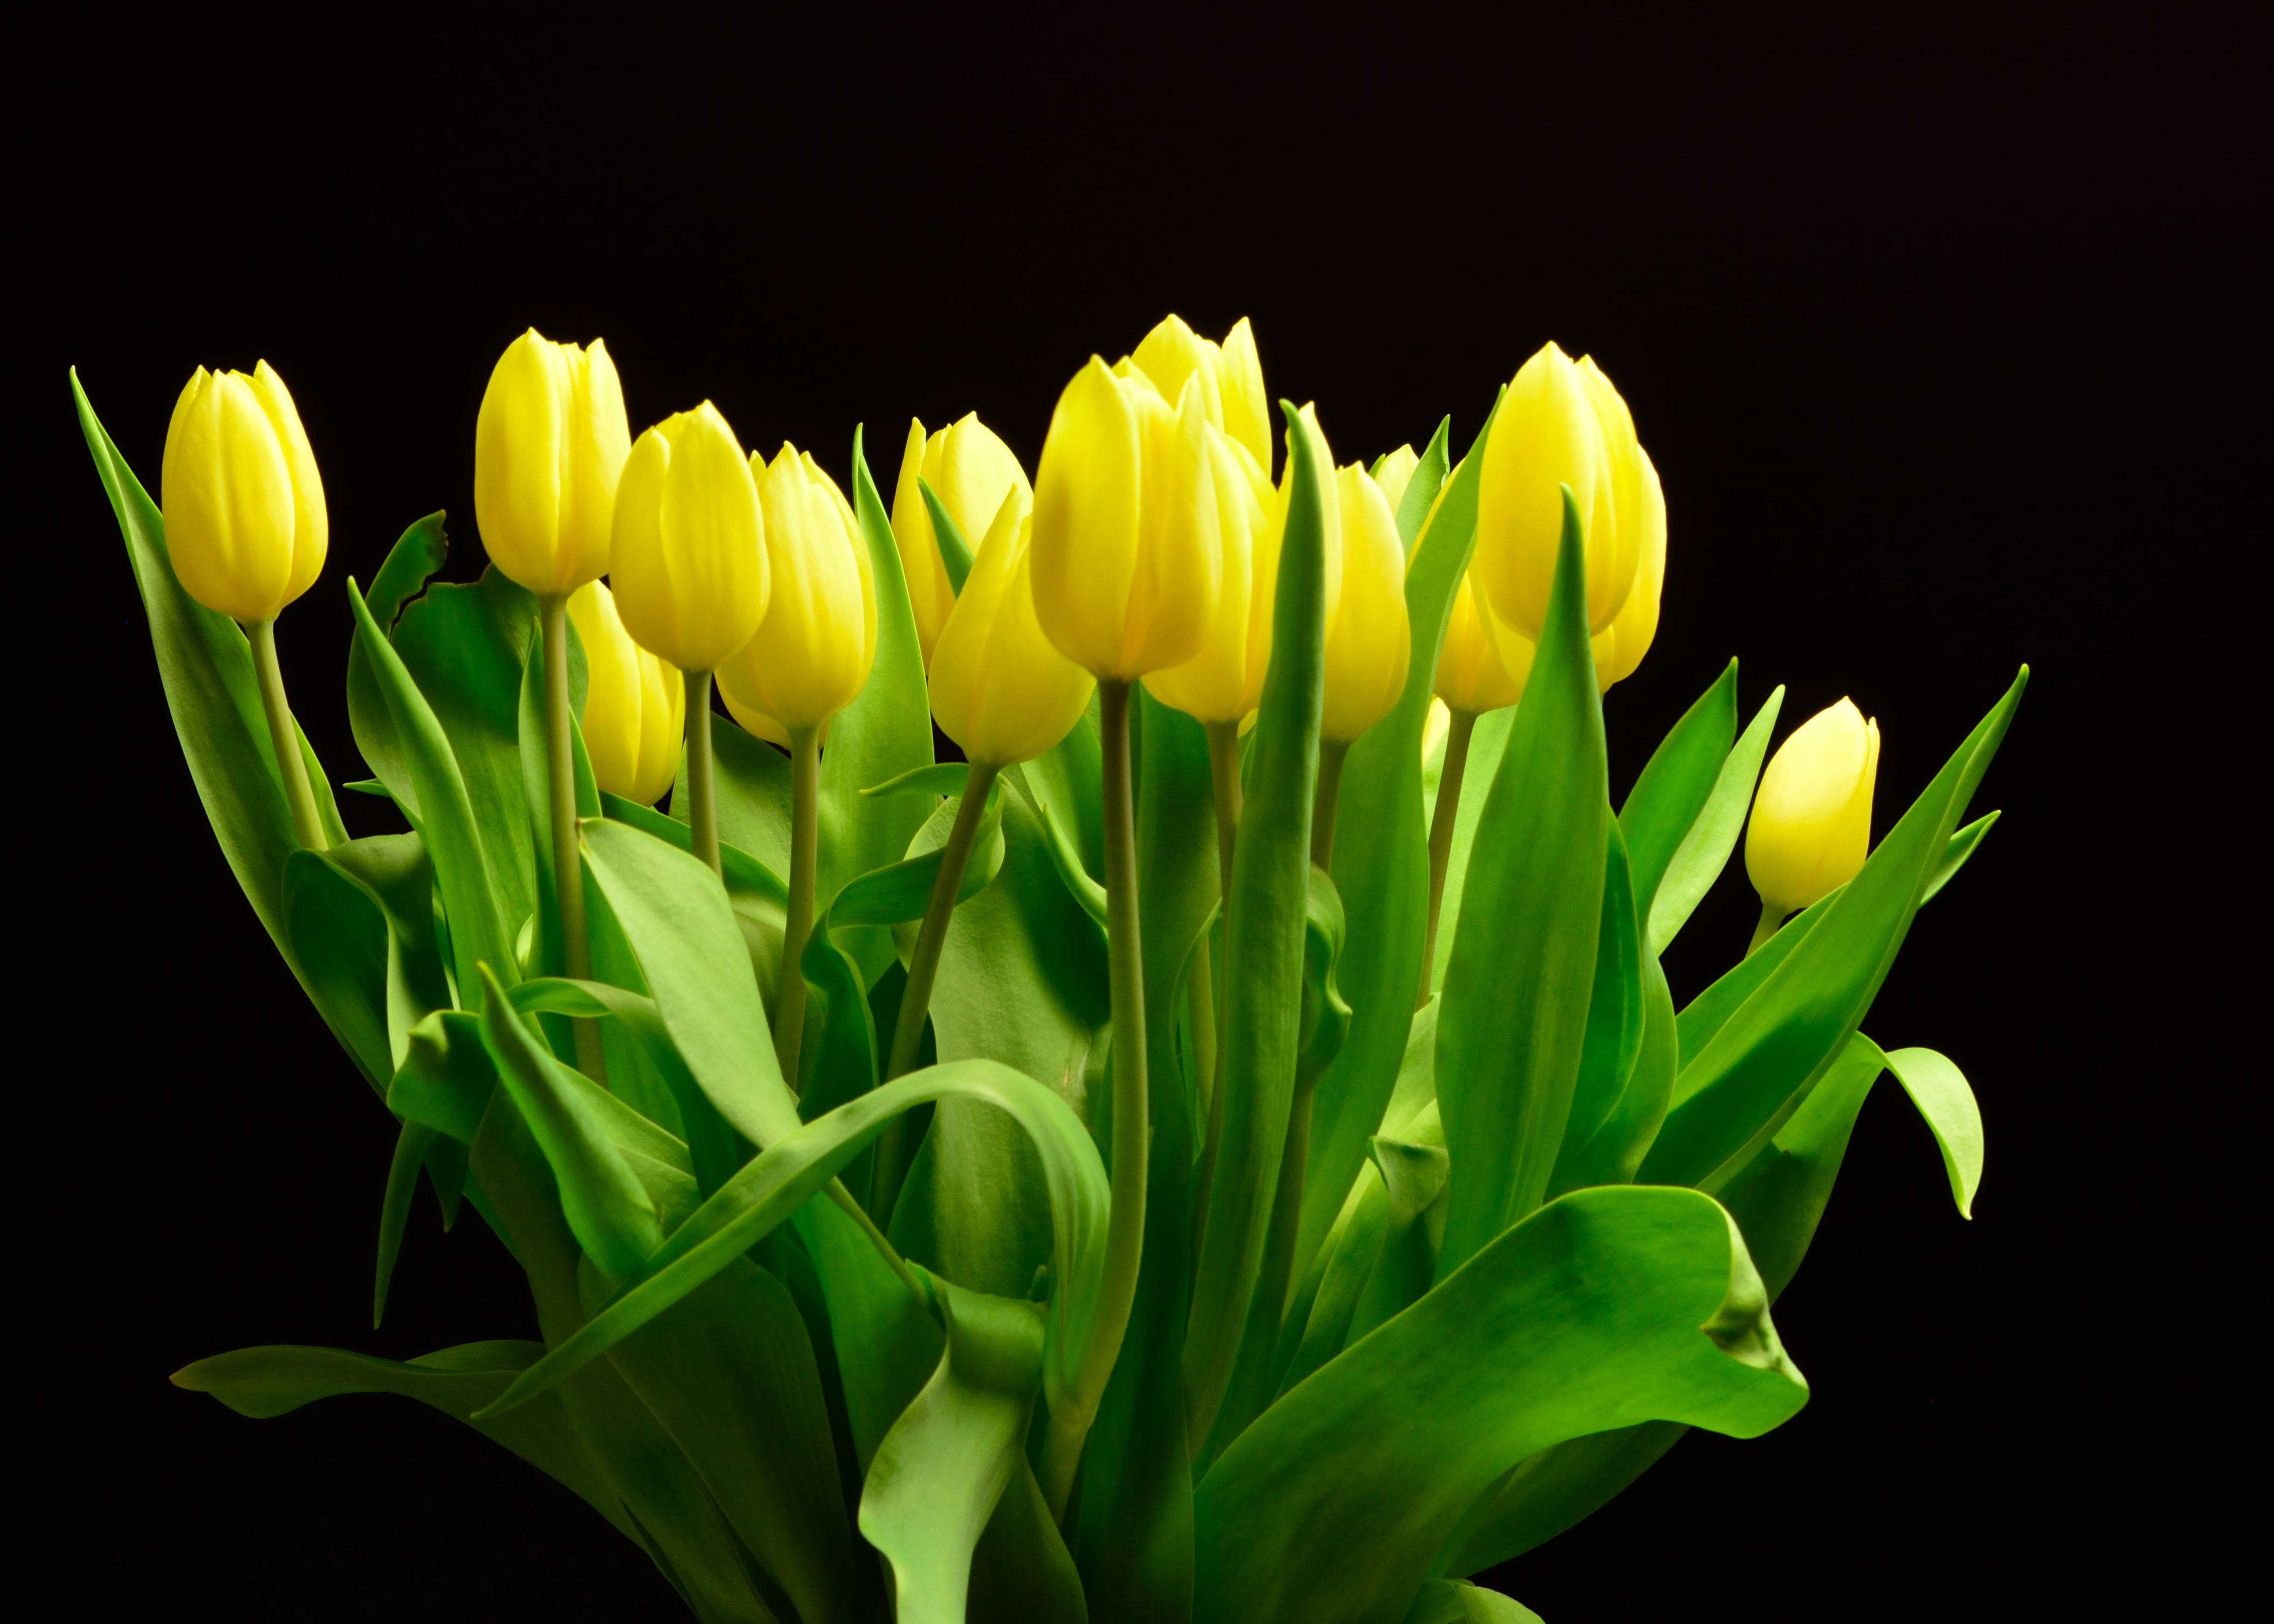 Фото тюльпаны желтые лепестки черный фон - бесплатные картинки на Fonwall